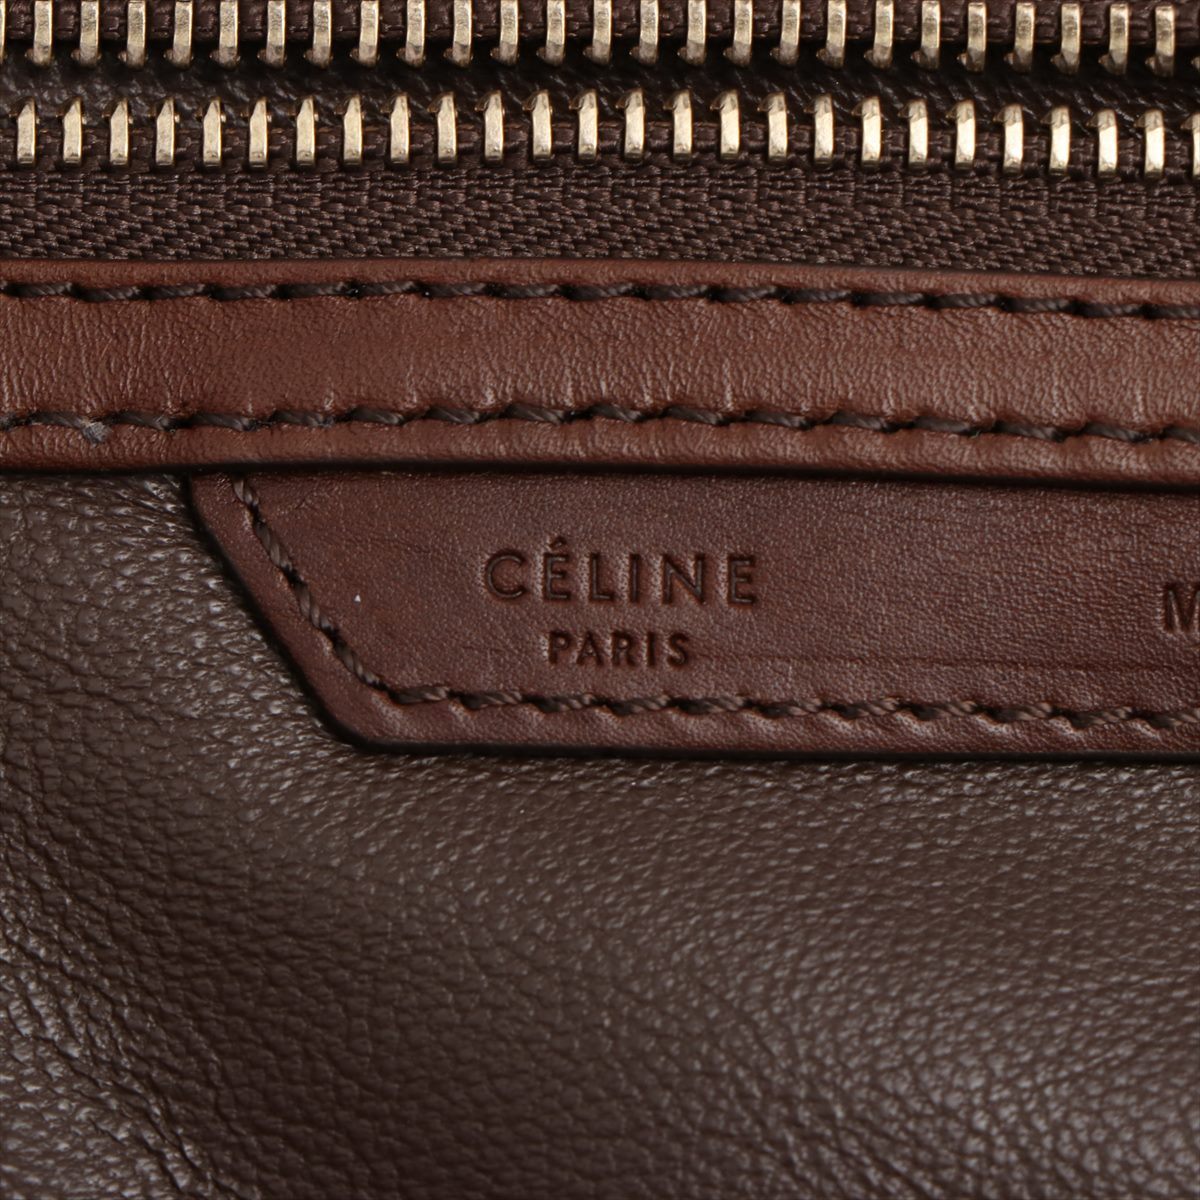 Celine Luggage 迷你皮革手提包 棕色 灰色